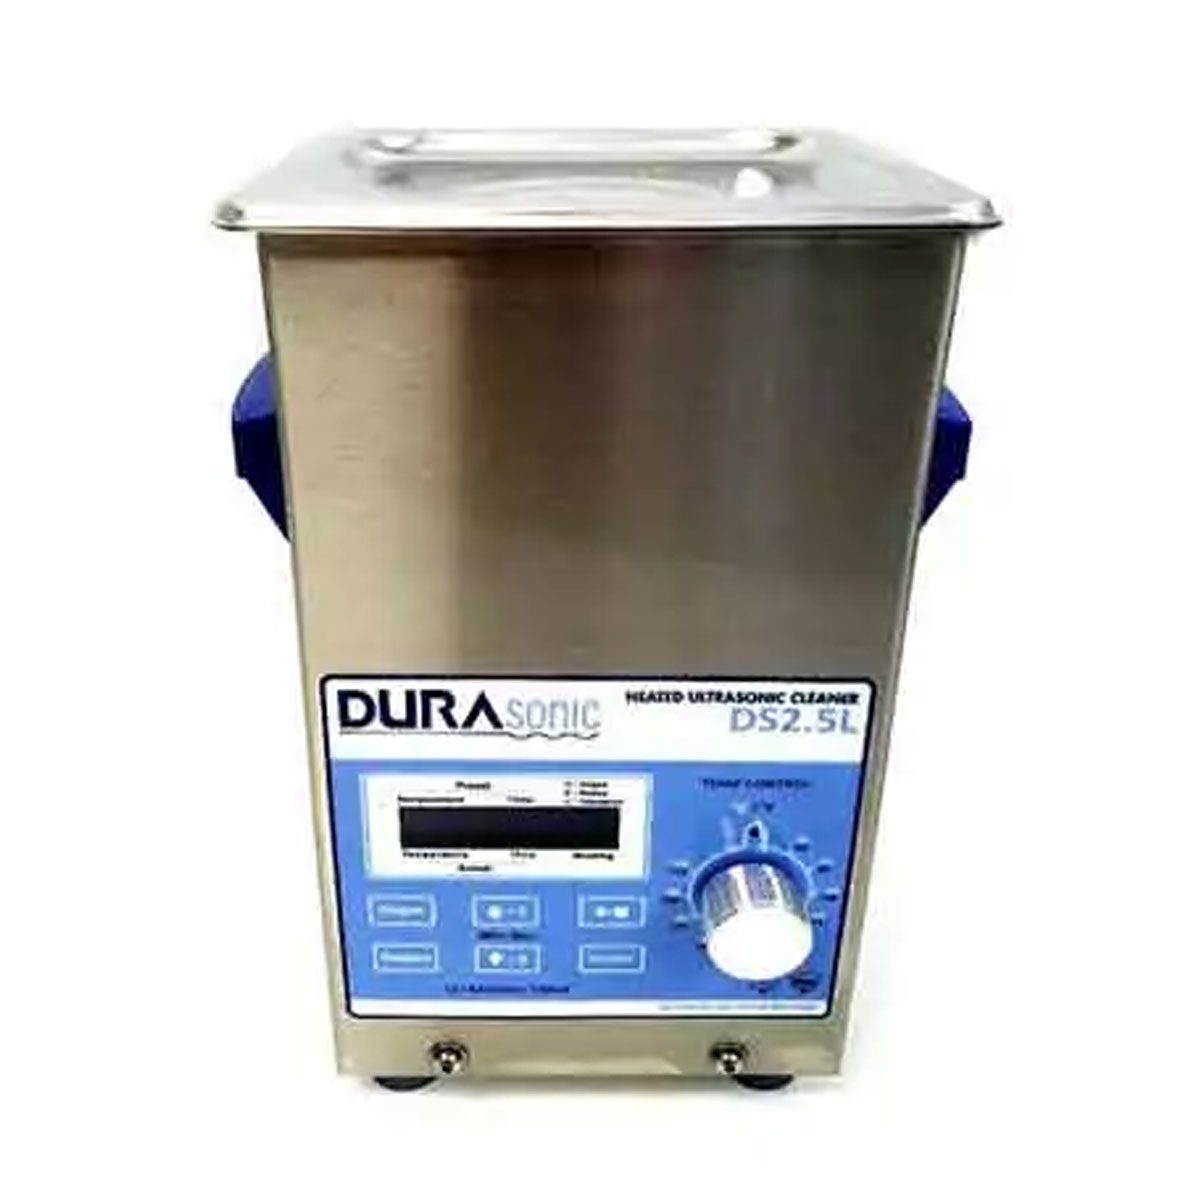 Fine Mesh Basket for 0.5 Gallon DuraSonic DS2.5L Ultrasonic Cleaner